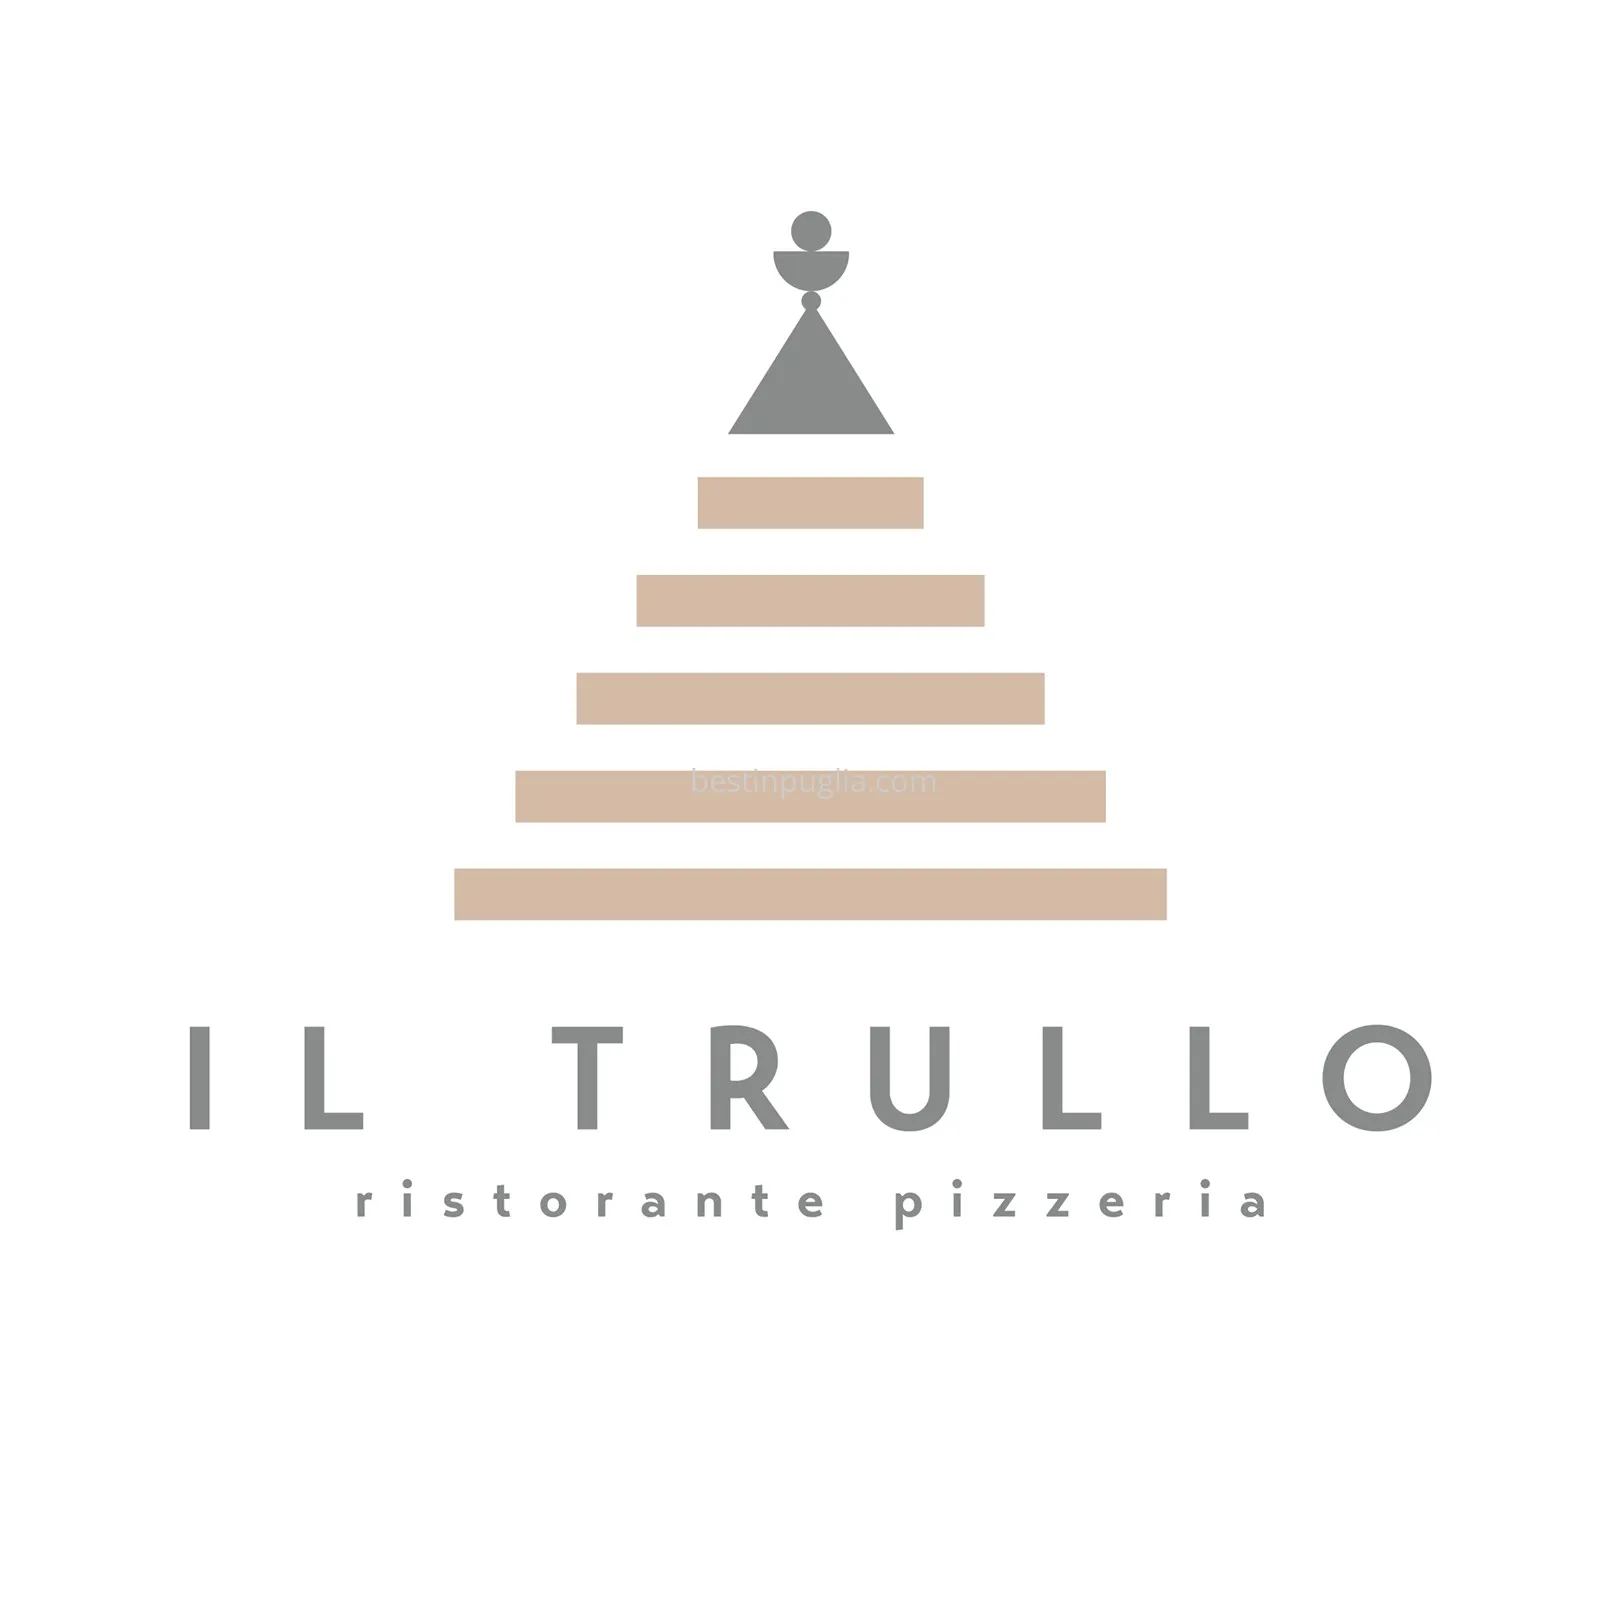 Il Trullo Restaurant Pizzeria in Brindisi